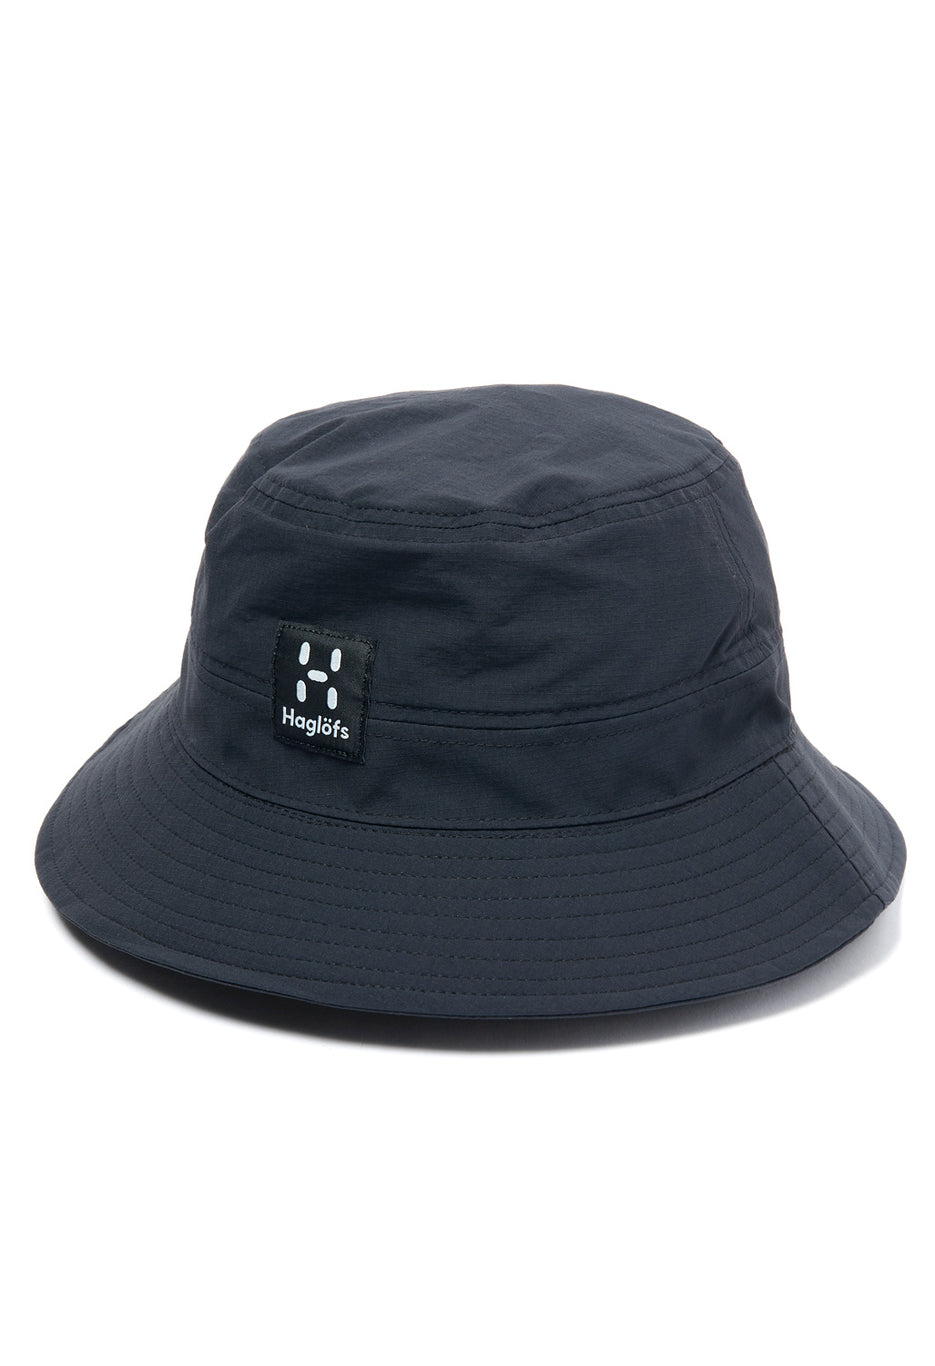 Haglofs LX Hat - True Black